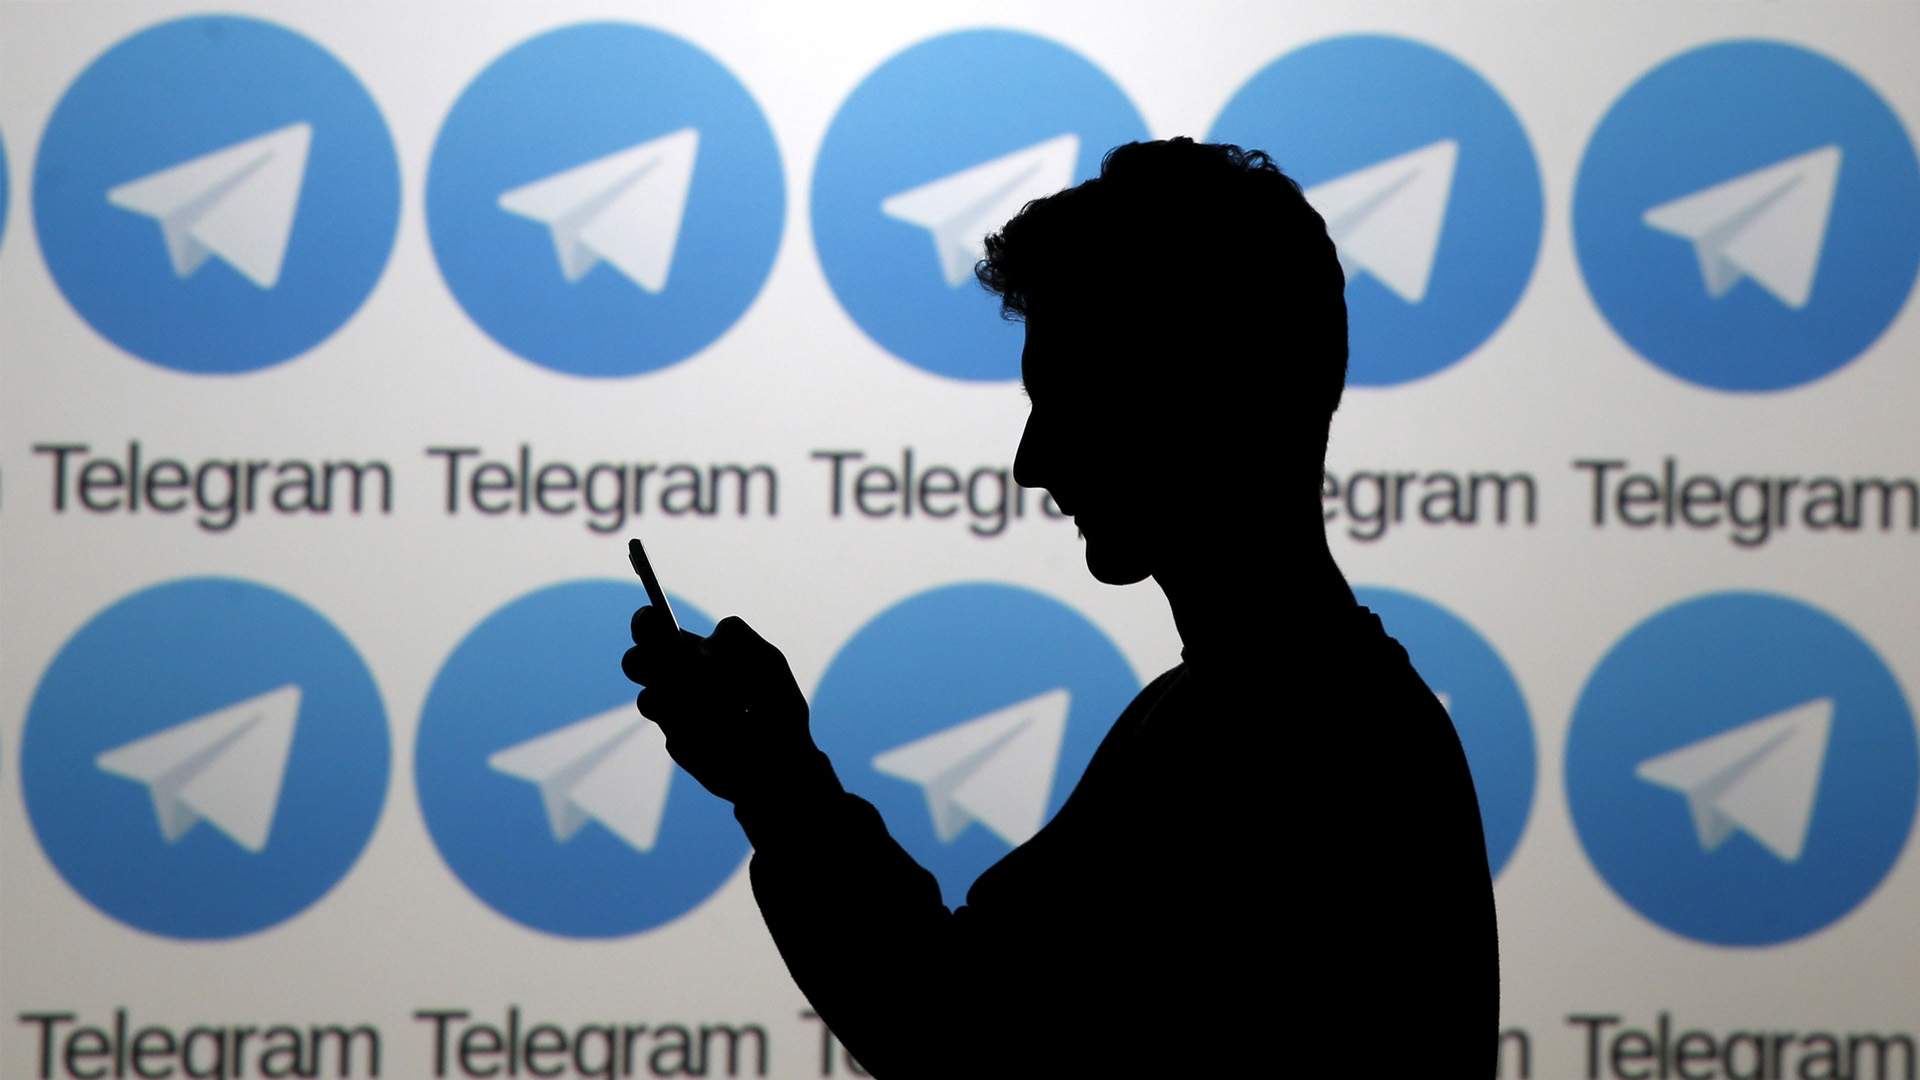 La Justicia rusa multa a Telegram por no entregar datos de usuarios